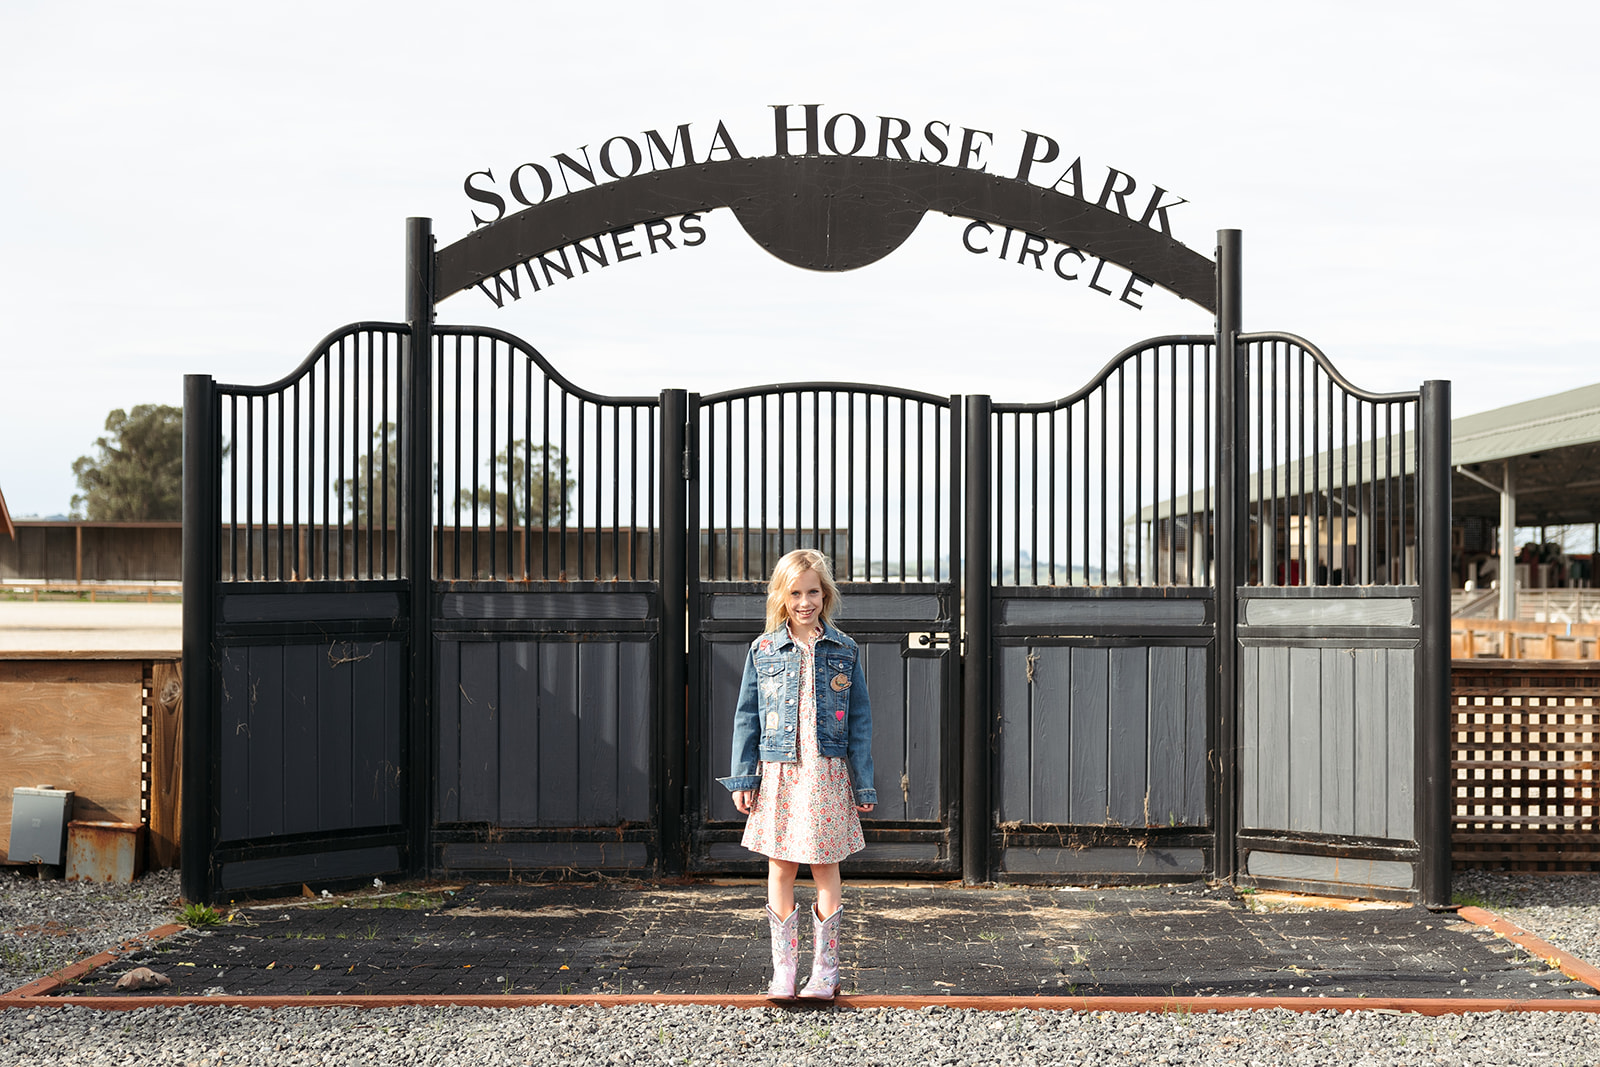 Family Photoshoot Outdoors at Sonoma Horse Park near Marin County